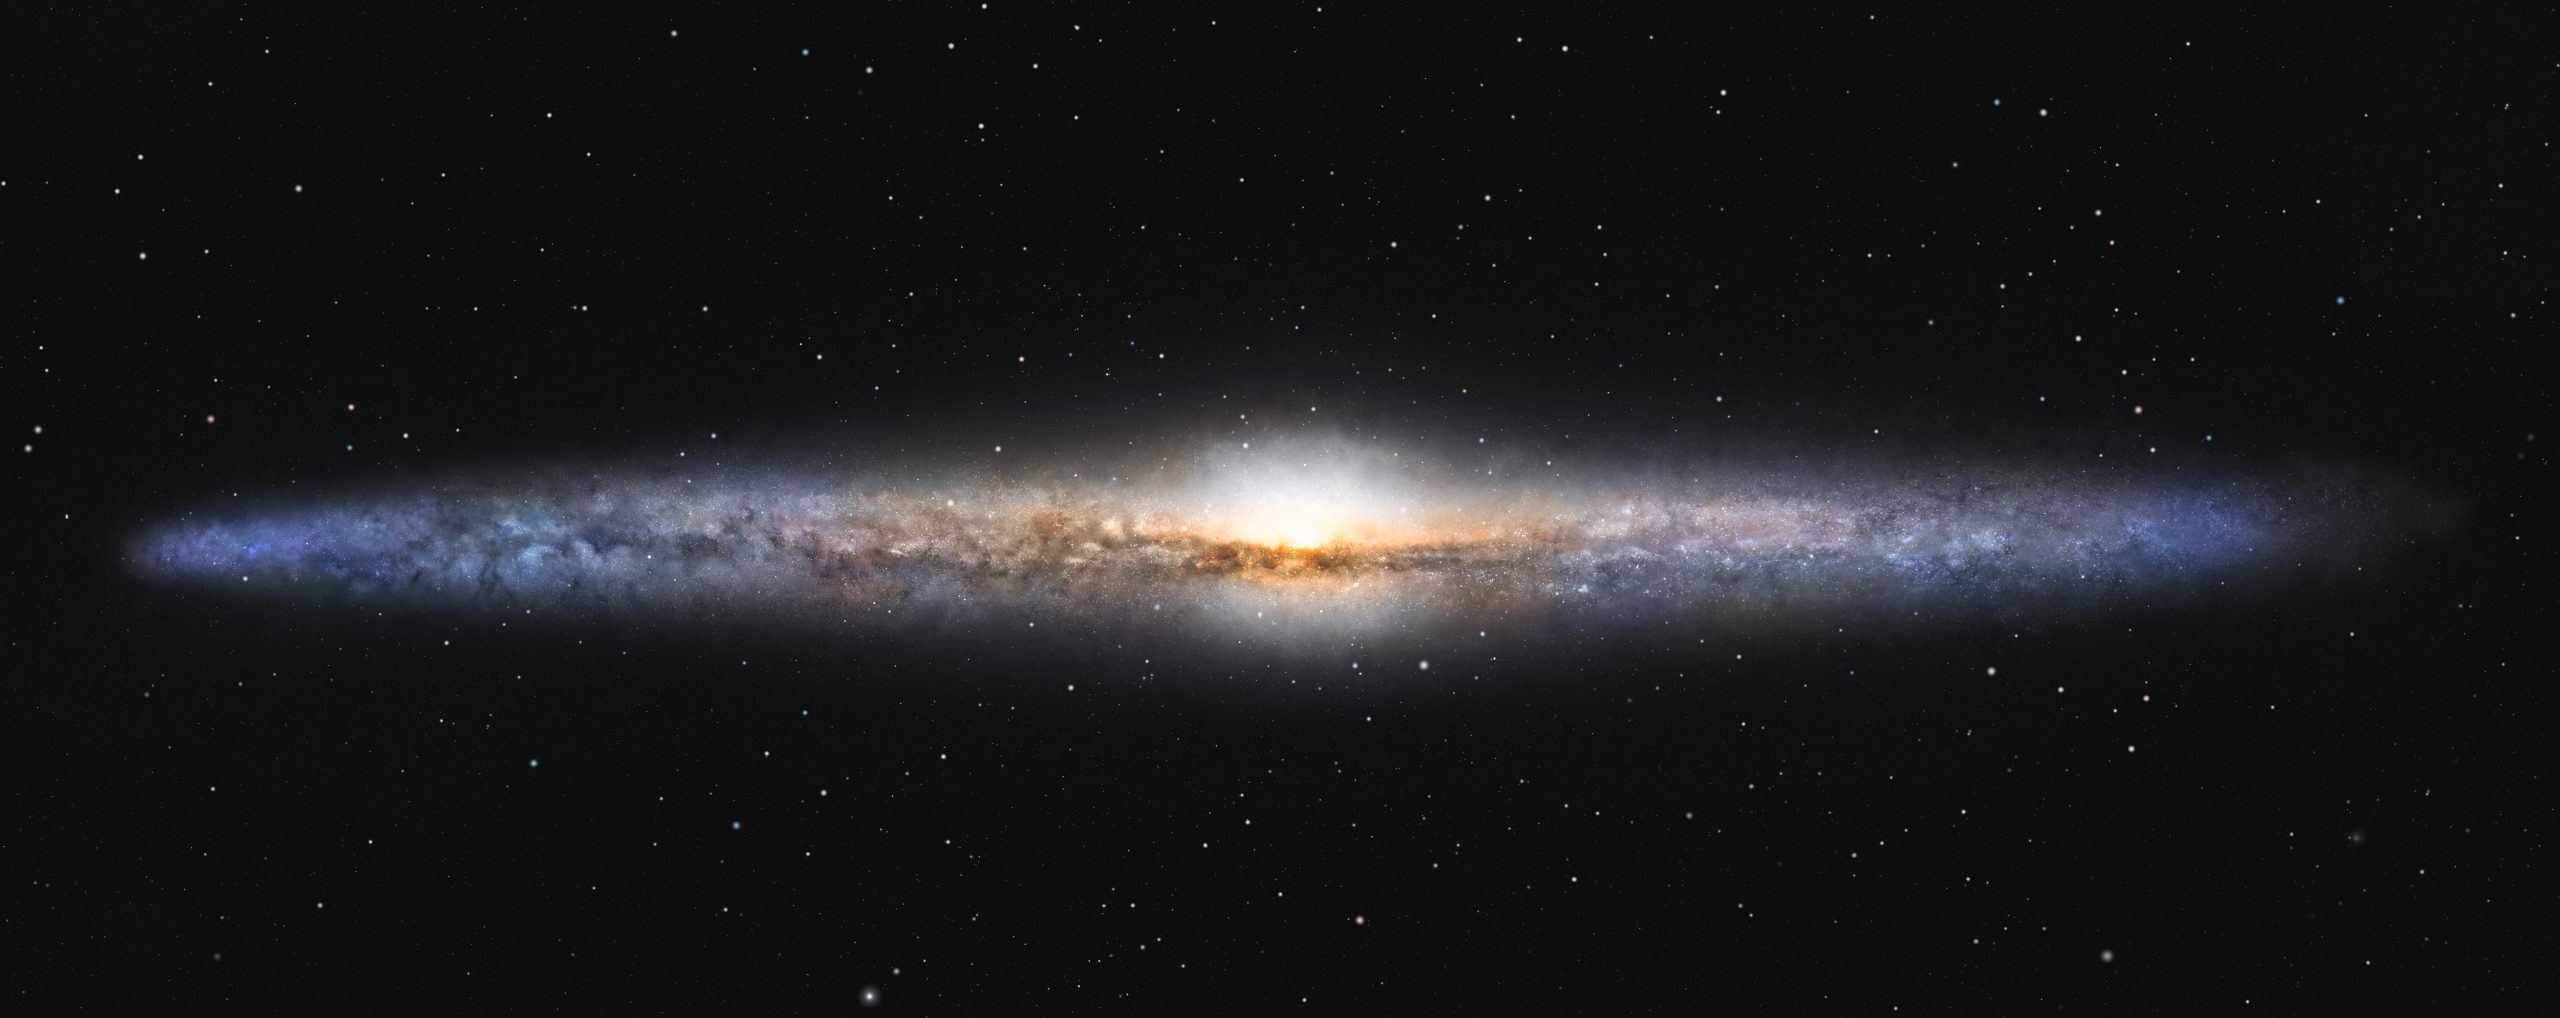 Открытие 14 новых активных галактических ядер проливает свет на галактическую активность